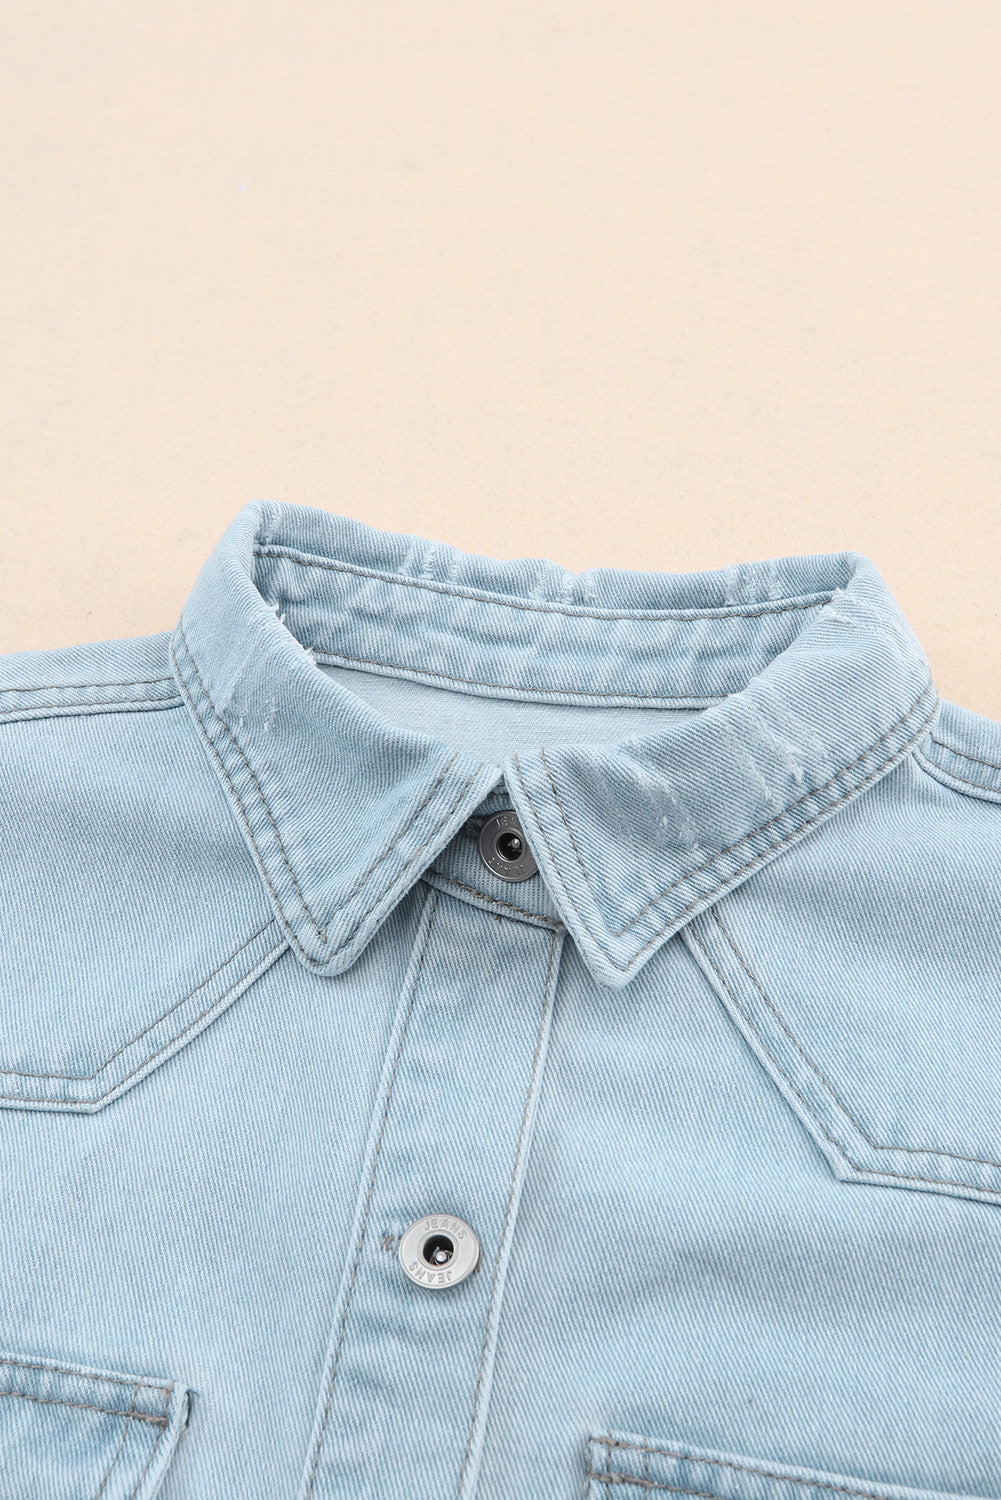 Veste en jean bleu ciel avec poche à rabat et ourlet brut boutonné